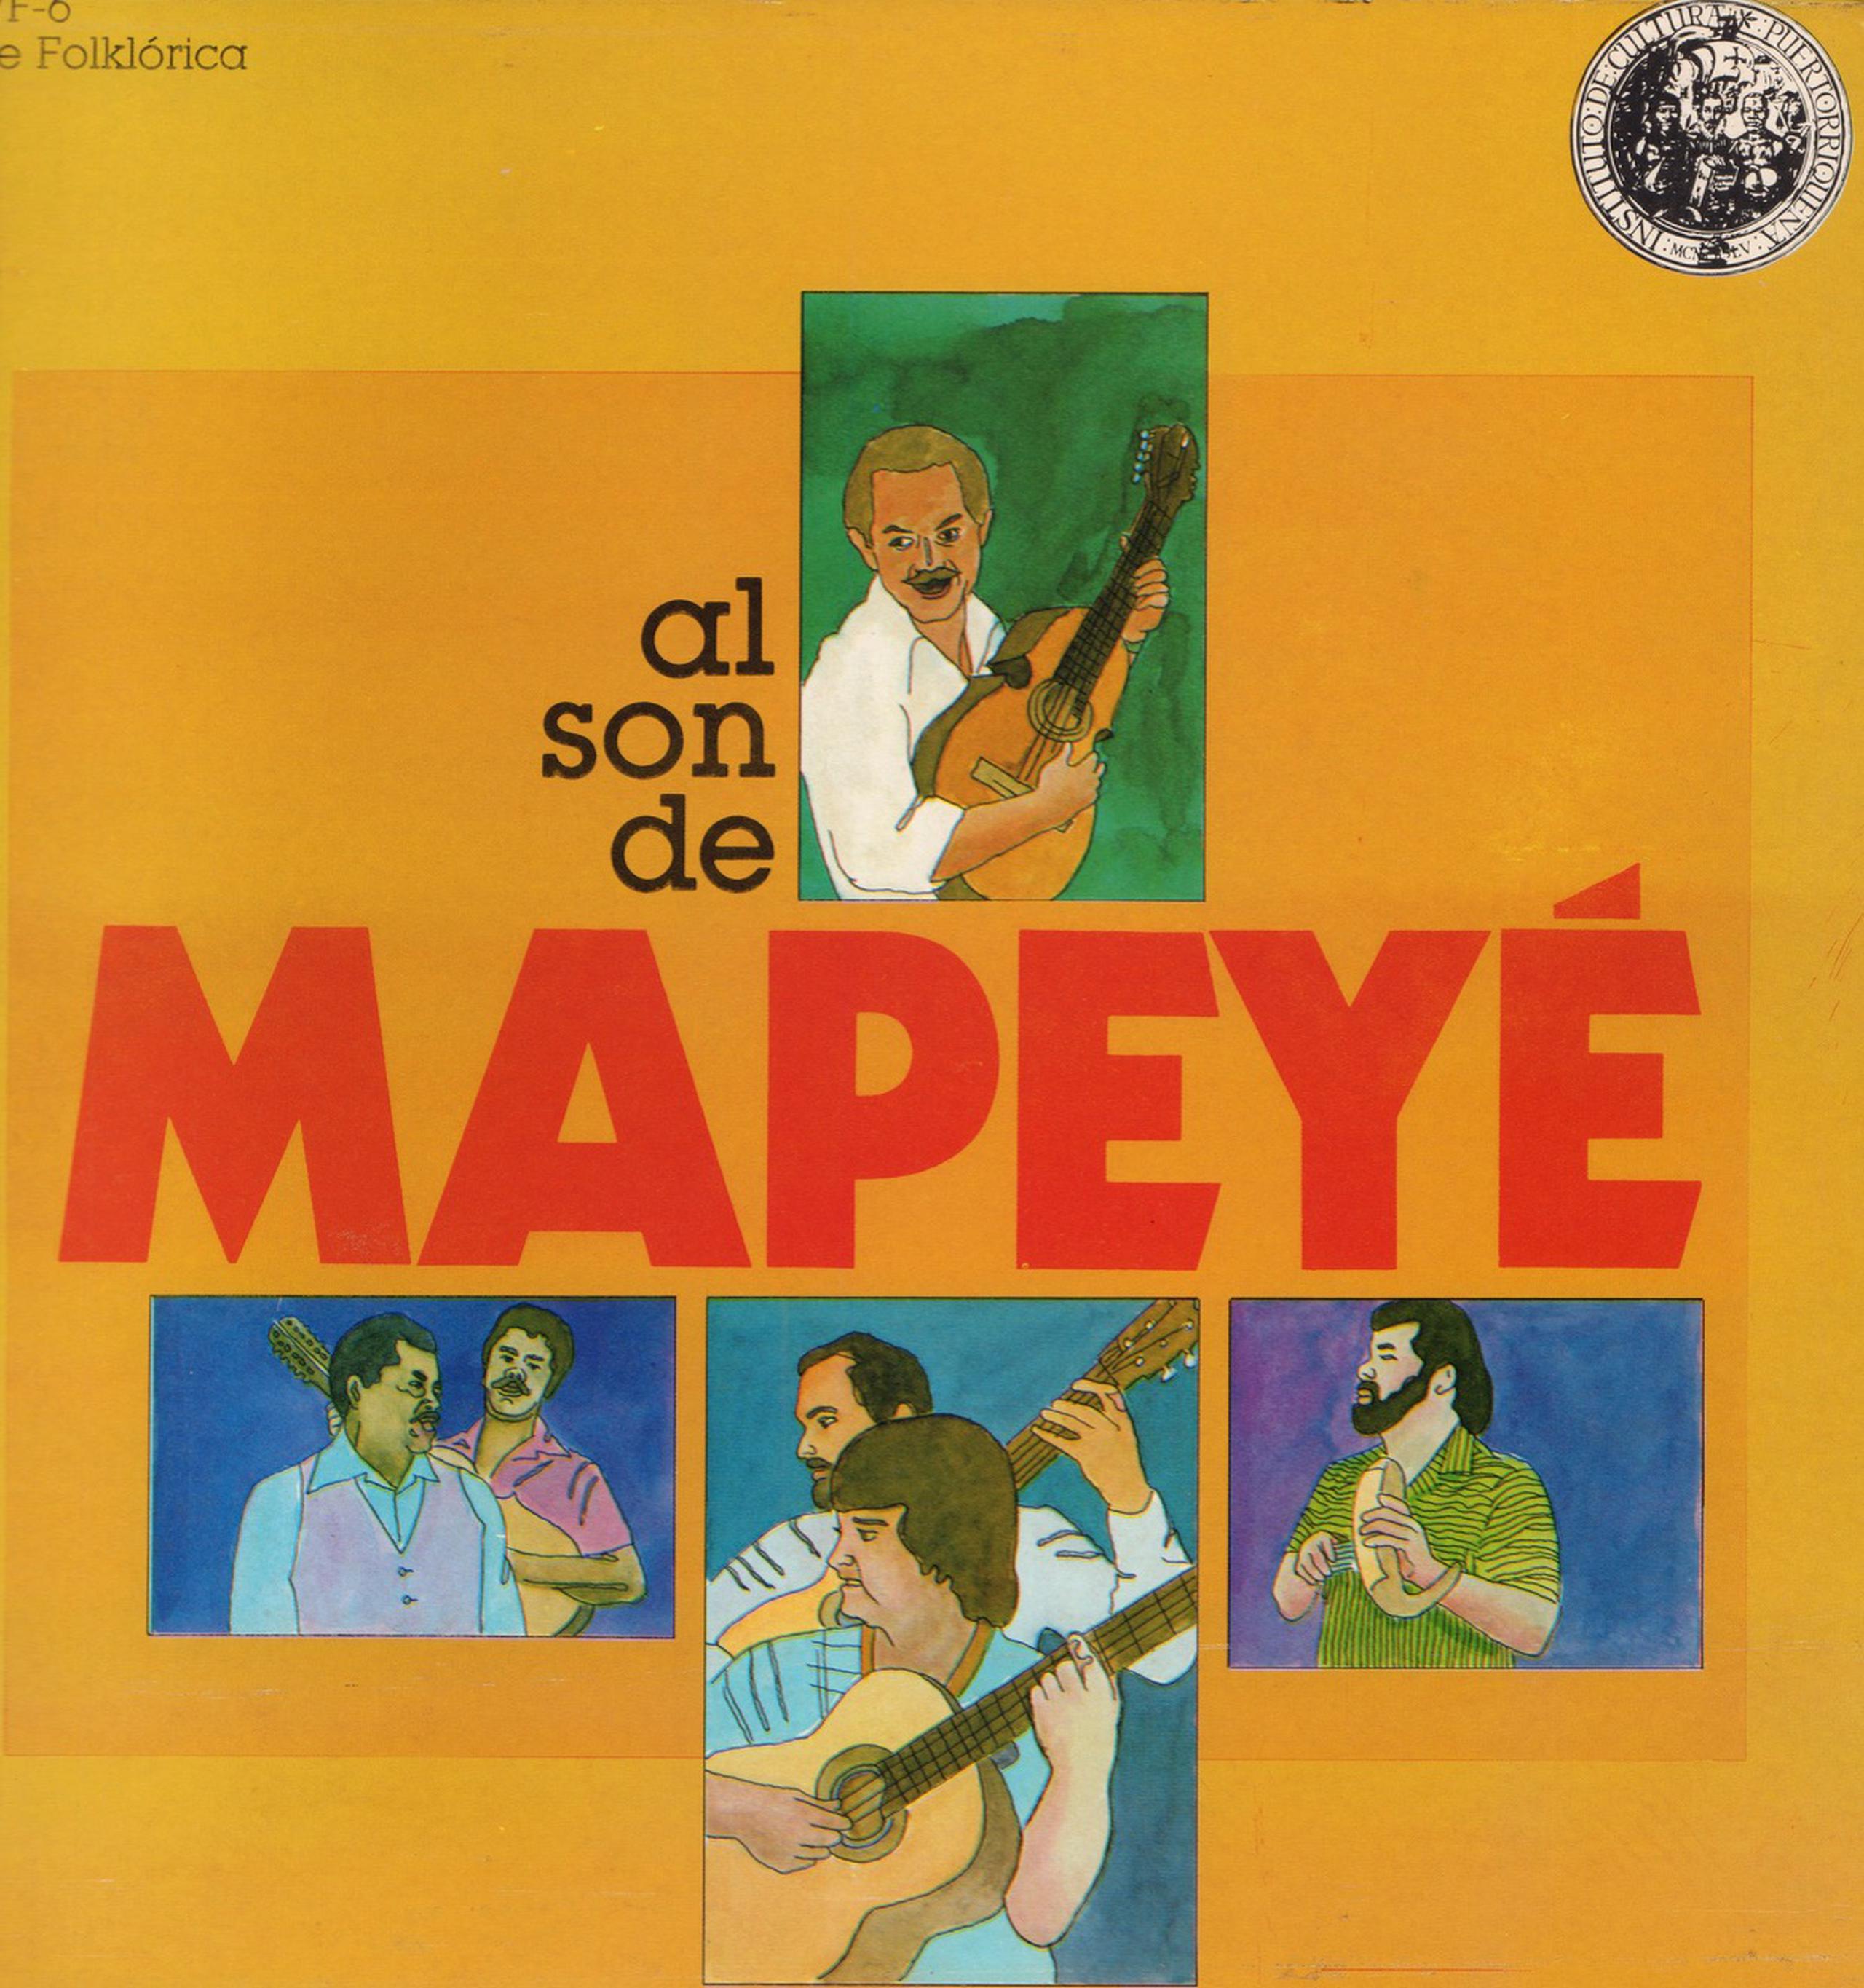 Portada de una producción del grupo puertorriqueño Mapeyé.